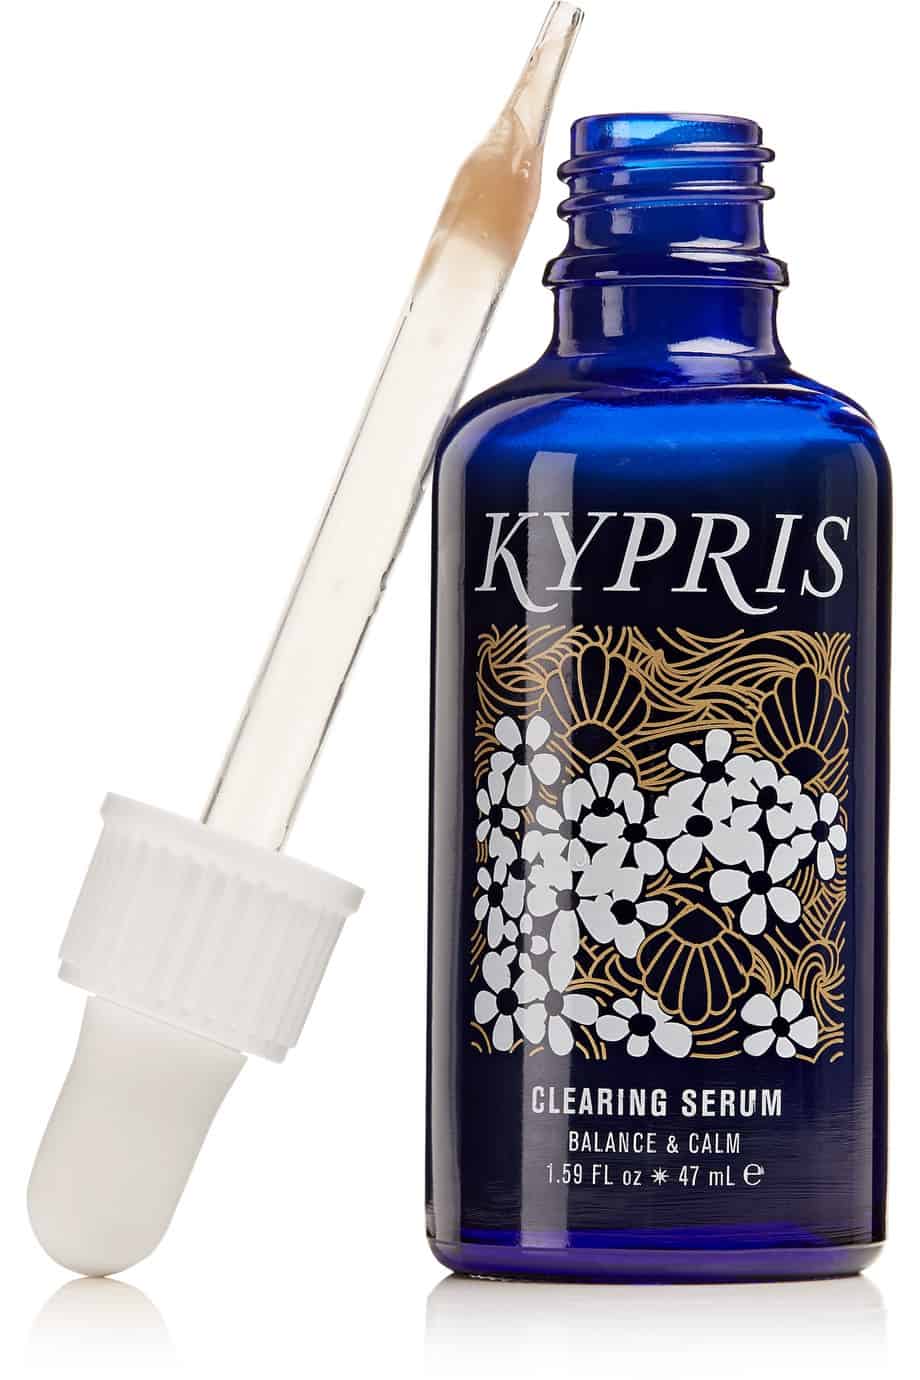 Kypris Clearing Serum